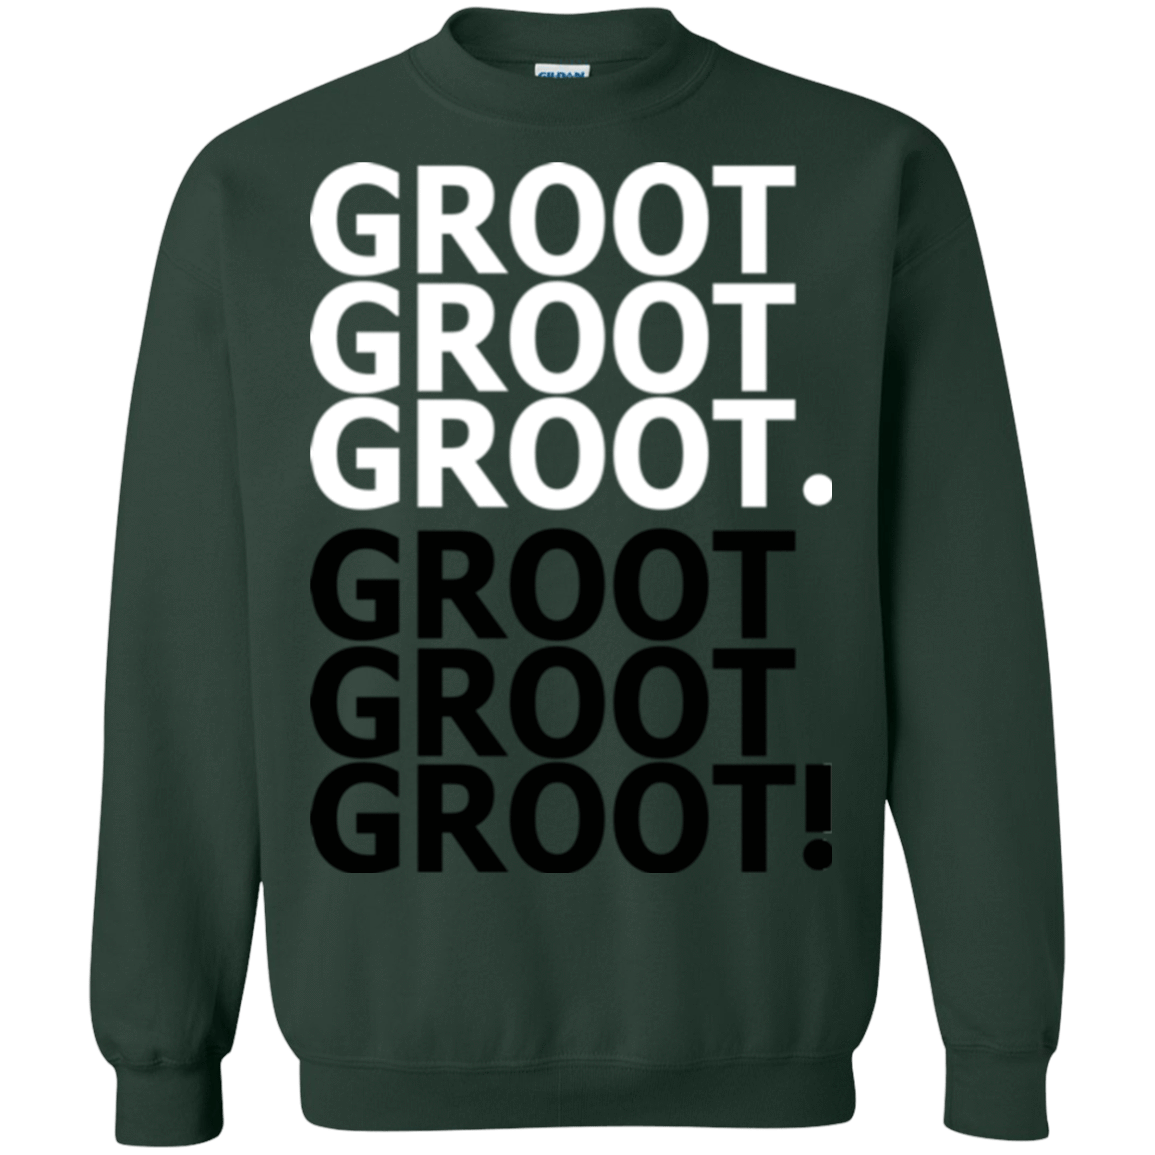 Sweatshirts Forest Green / Small Get over it Groot Crewneck Sweatshirt